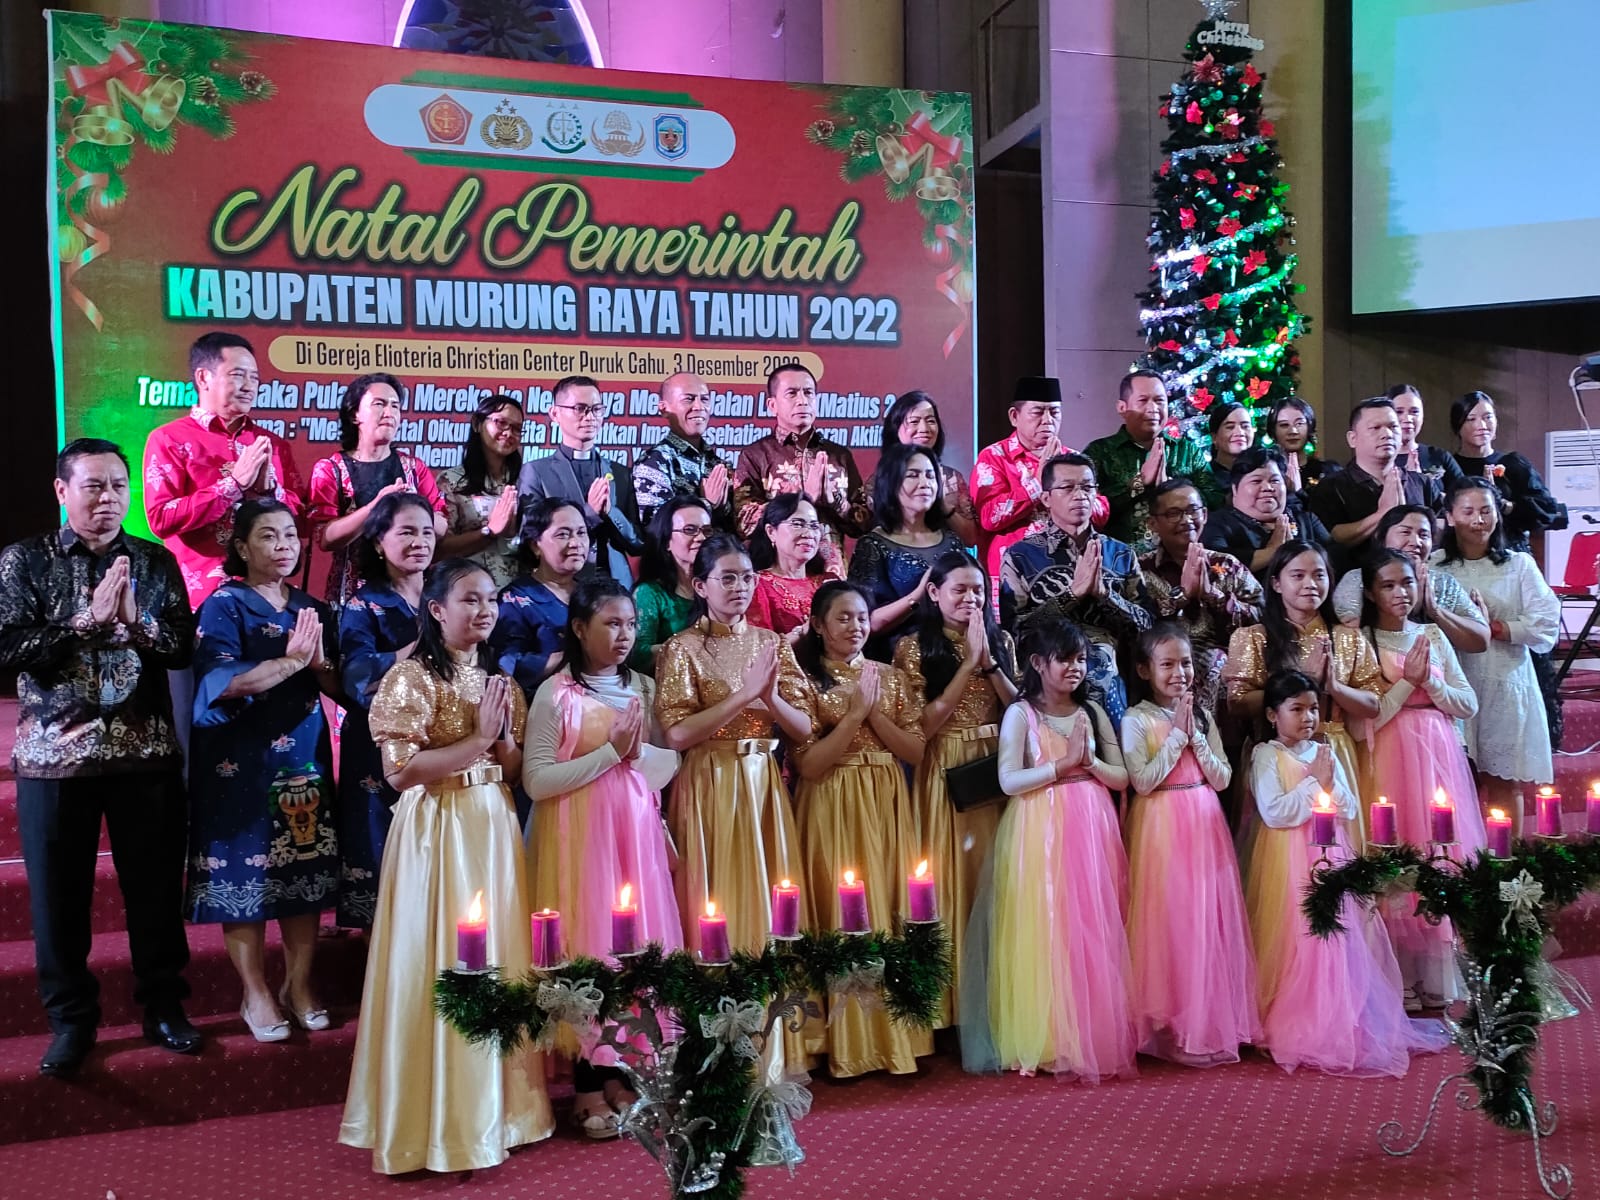 Perayaan Natal Pemerintah Kabupaten Murung Raya di Gereja Elioteria Christian Center Kota Puruk Cahu, Sabtu (3/12/2022) tadi.